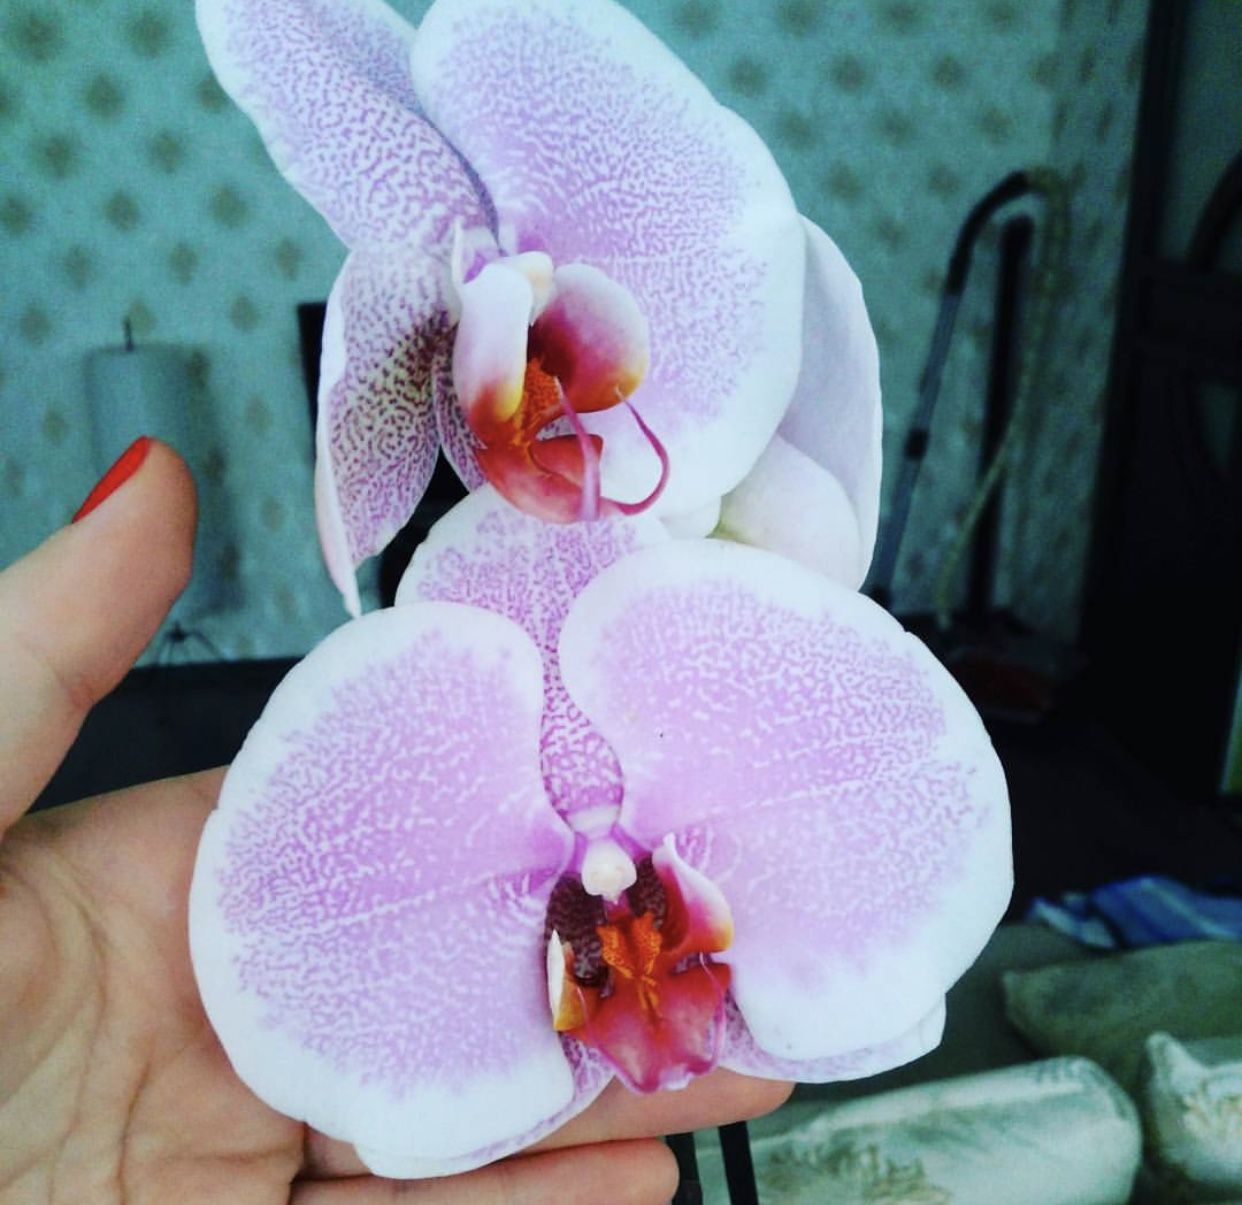 Орхидея Тинкербелл